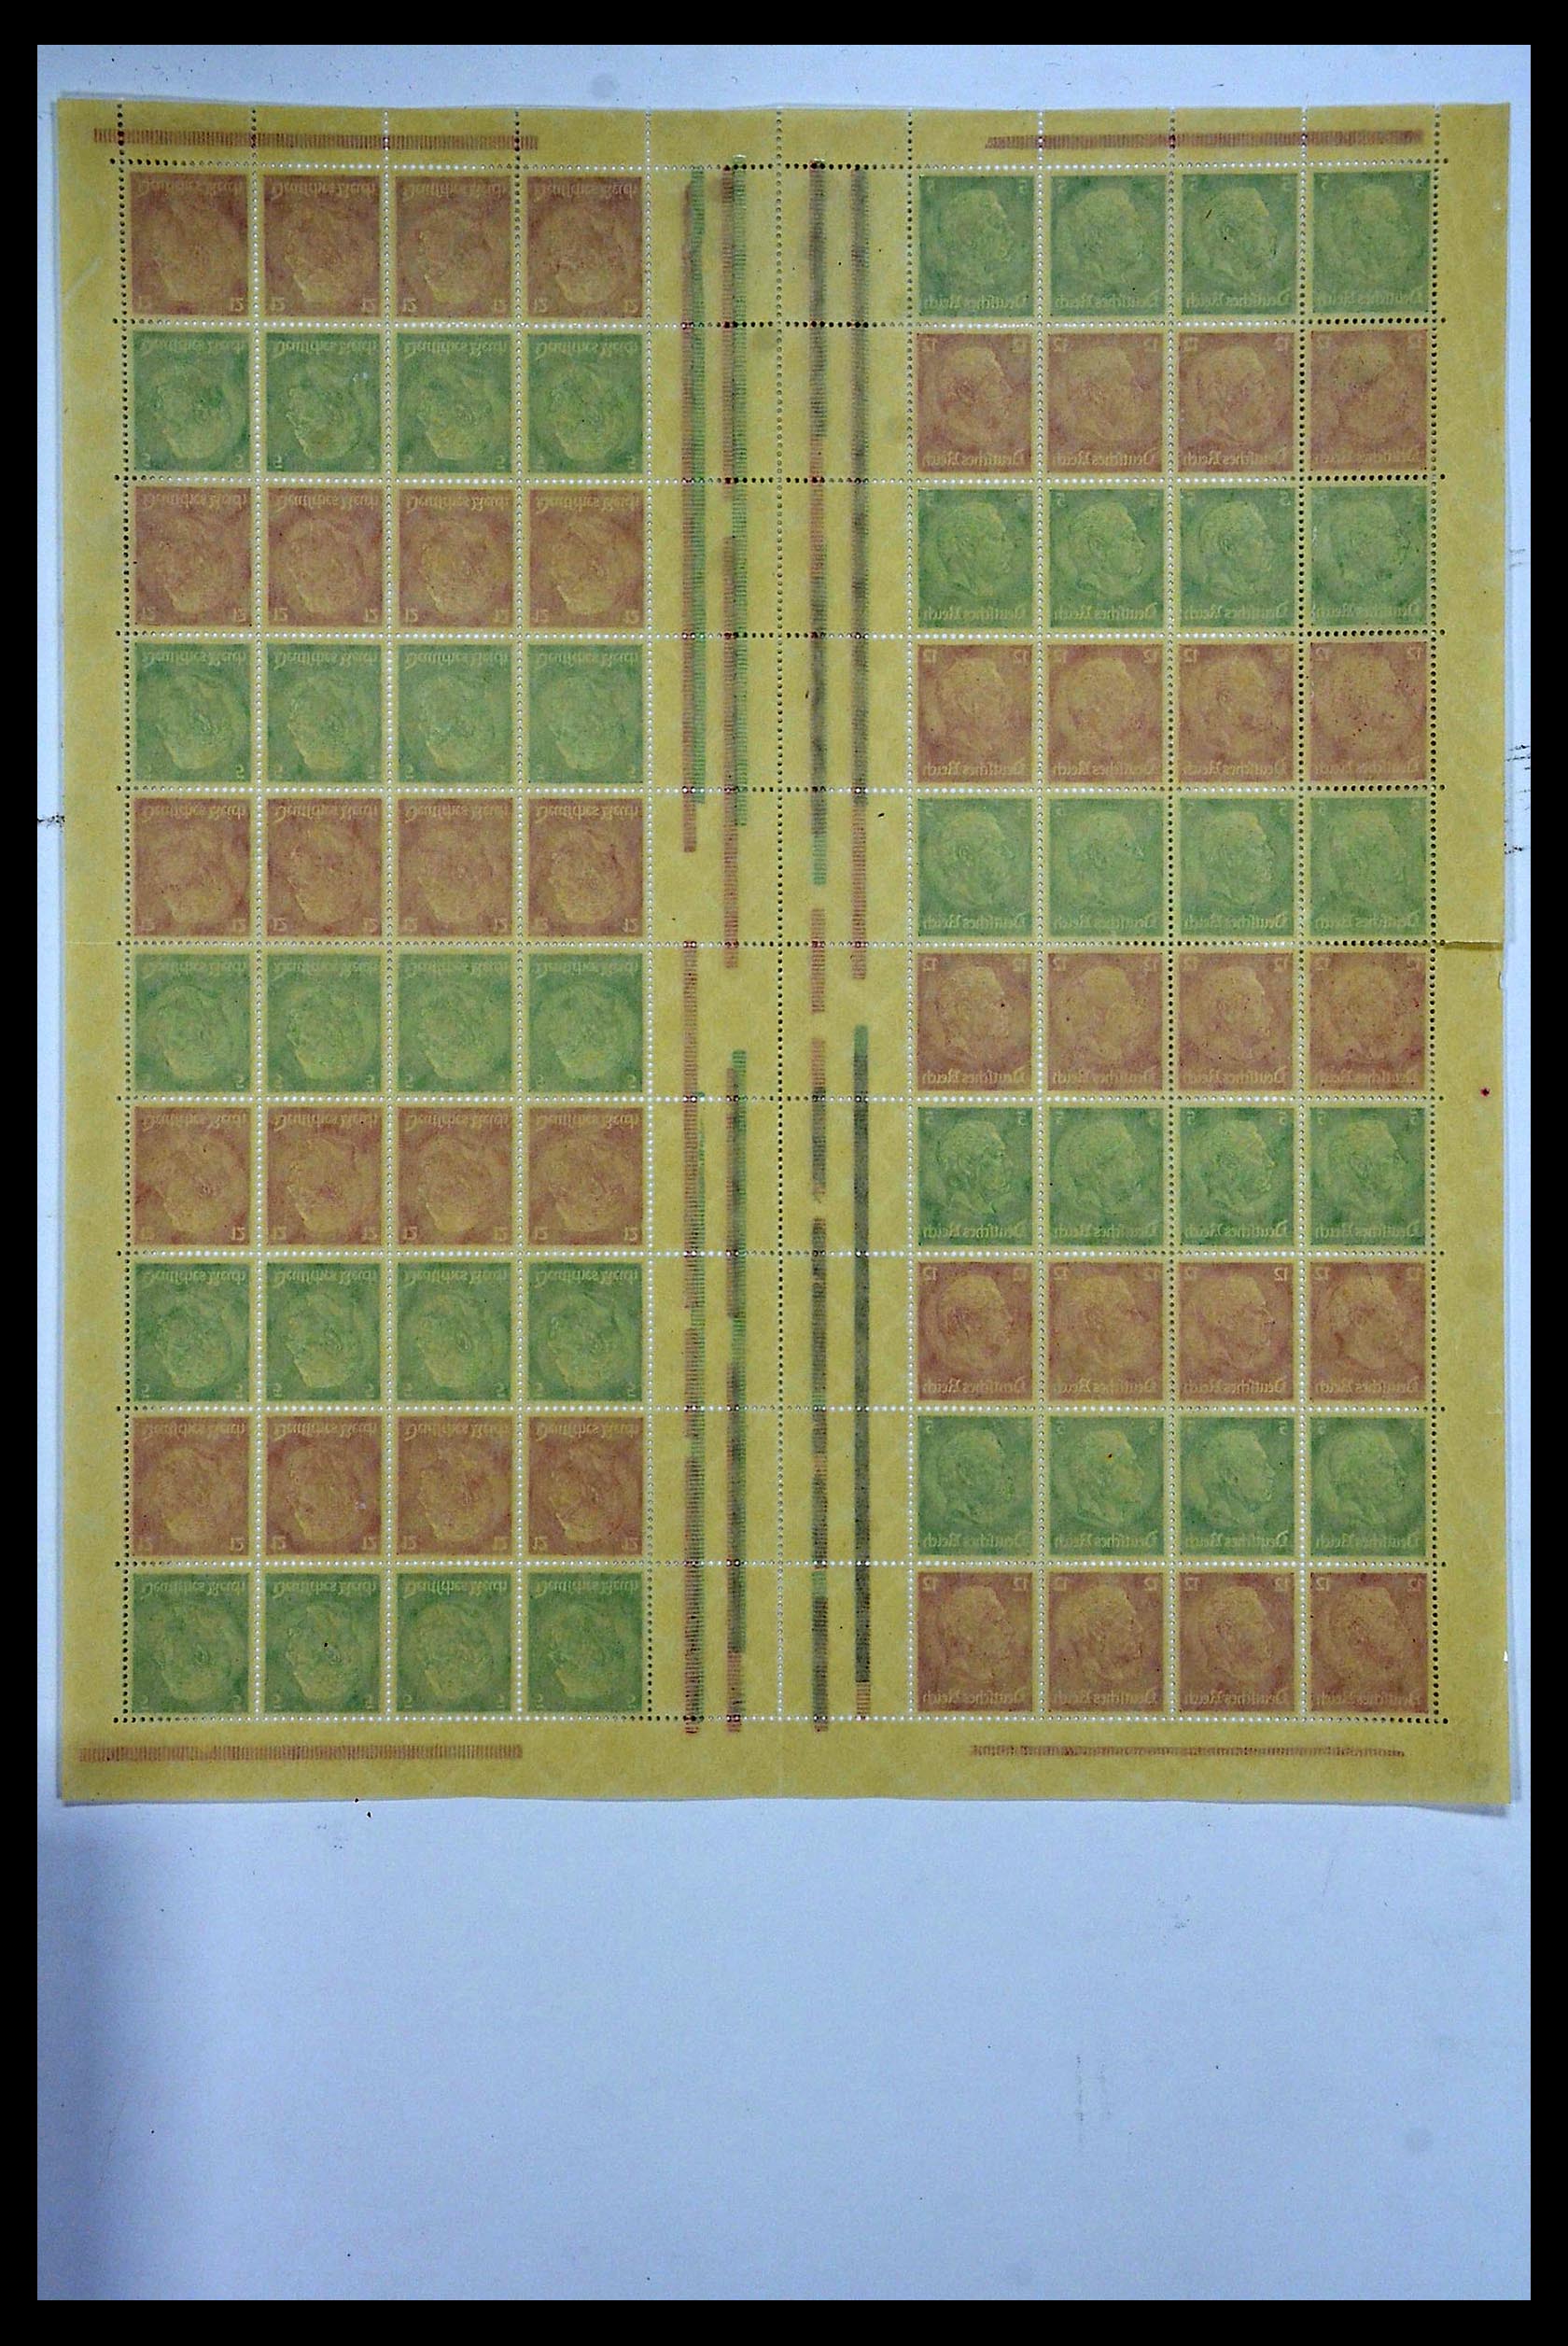 34164 006 - Stamp collection 34164 German Reich Markenheftchenbogen 1933-1942.